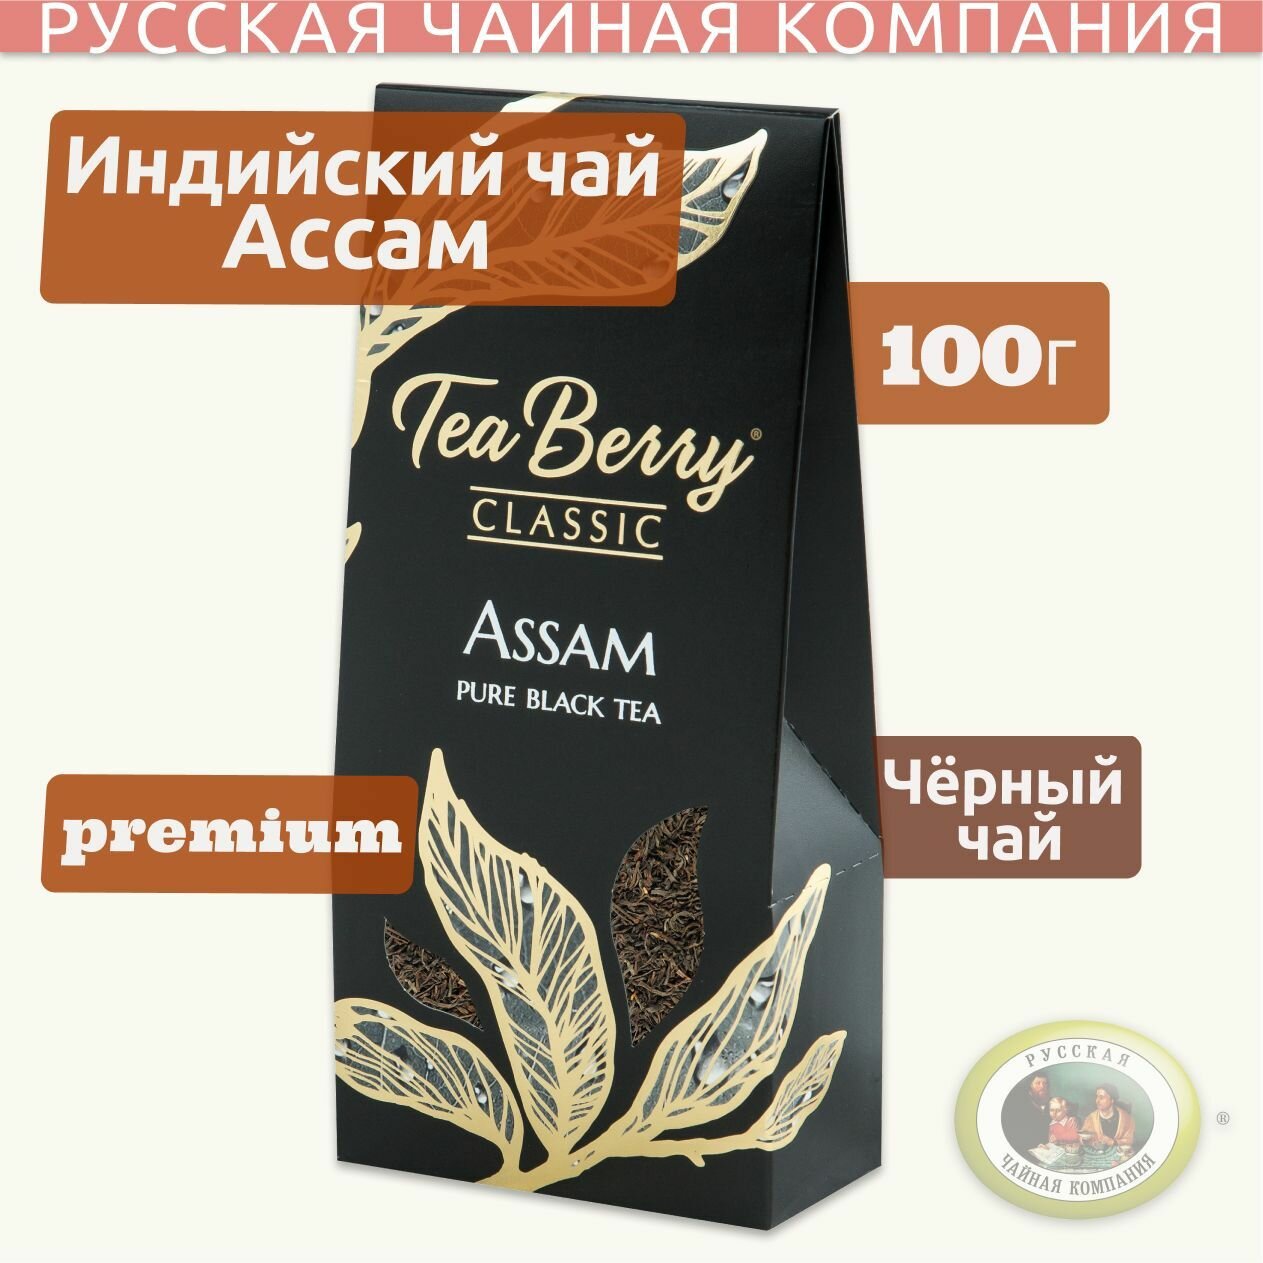 Чай черный листовой Теа Berry "Ассам" "Assam" 100гр